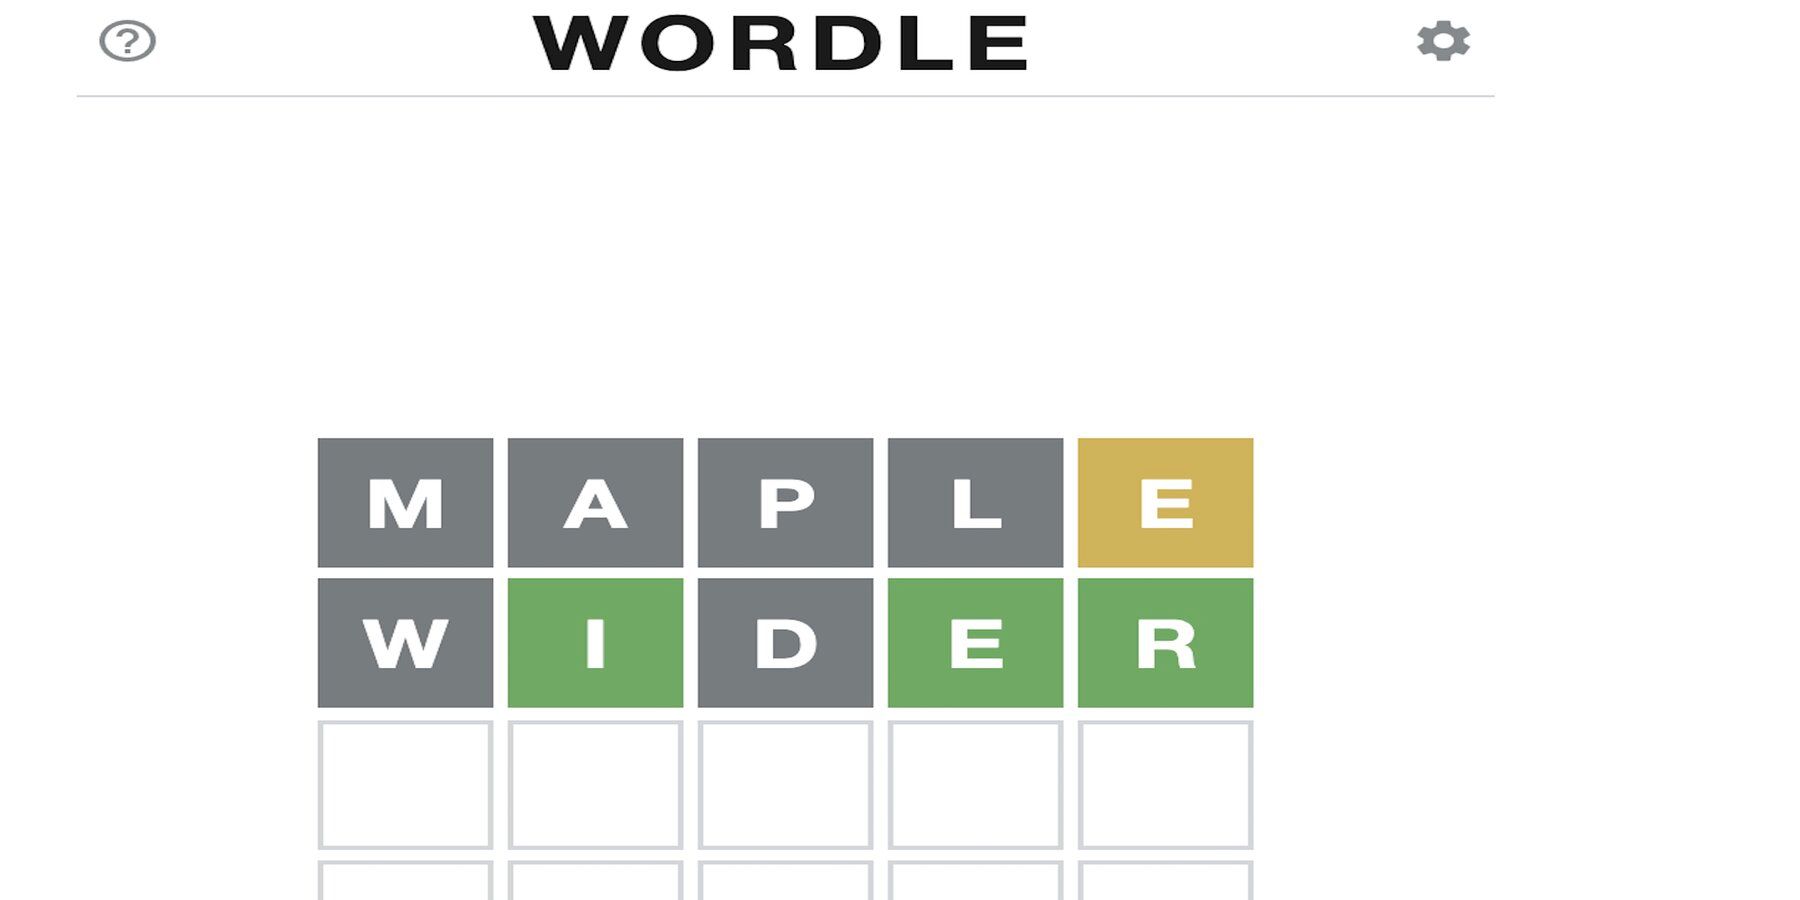 Диаграмма Wordle показывает, как часто определенные буквы используются в головоломках